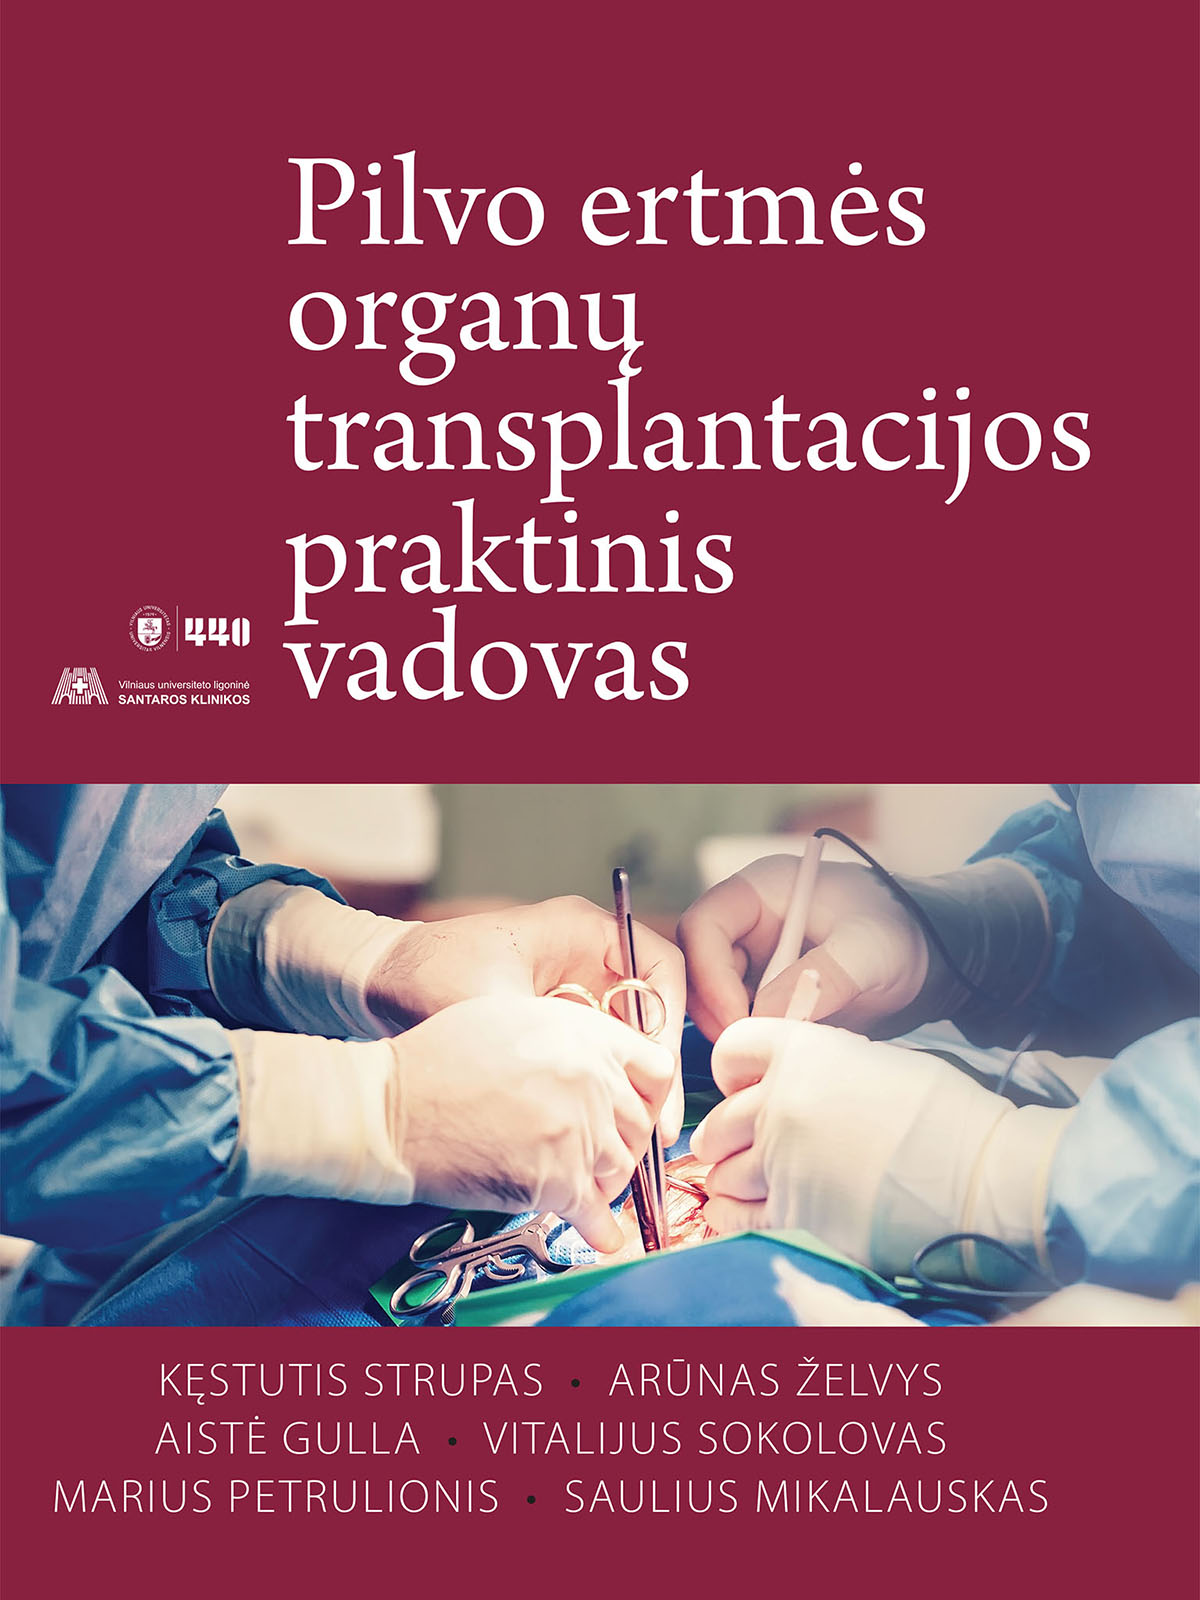 2019 Pilvo ertmes organu transplantacijos praktinis vadovas